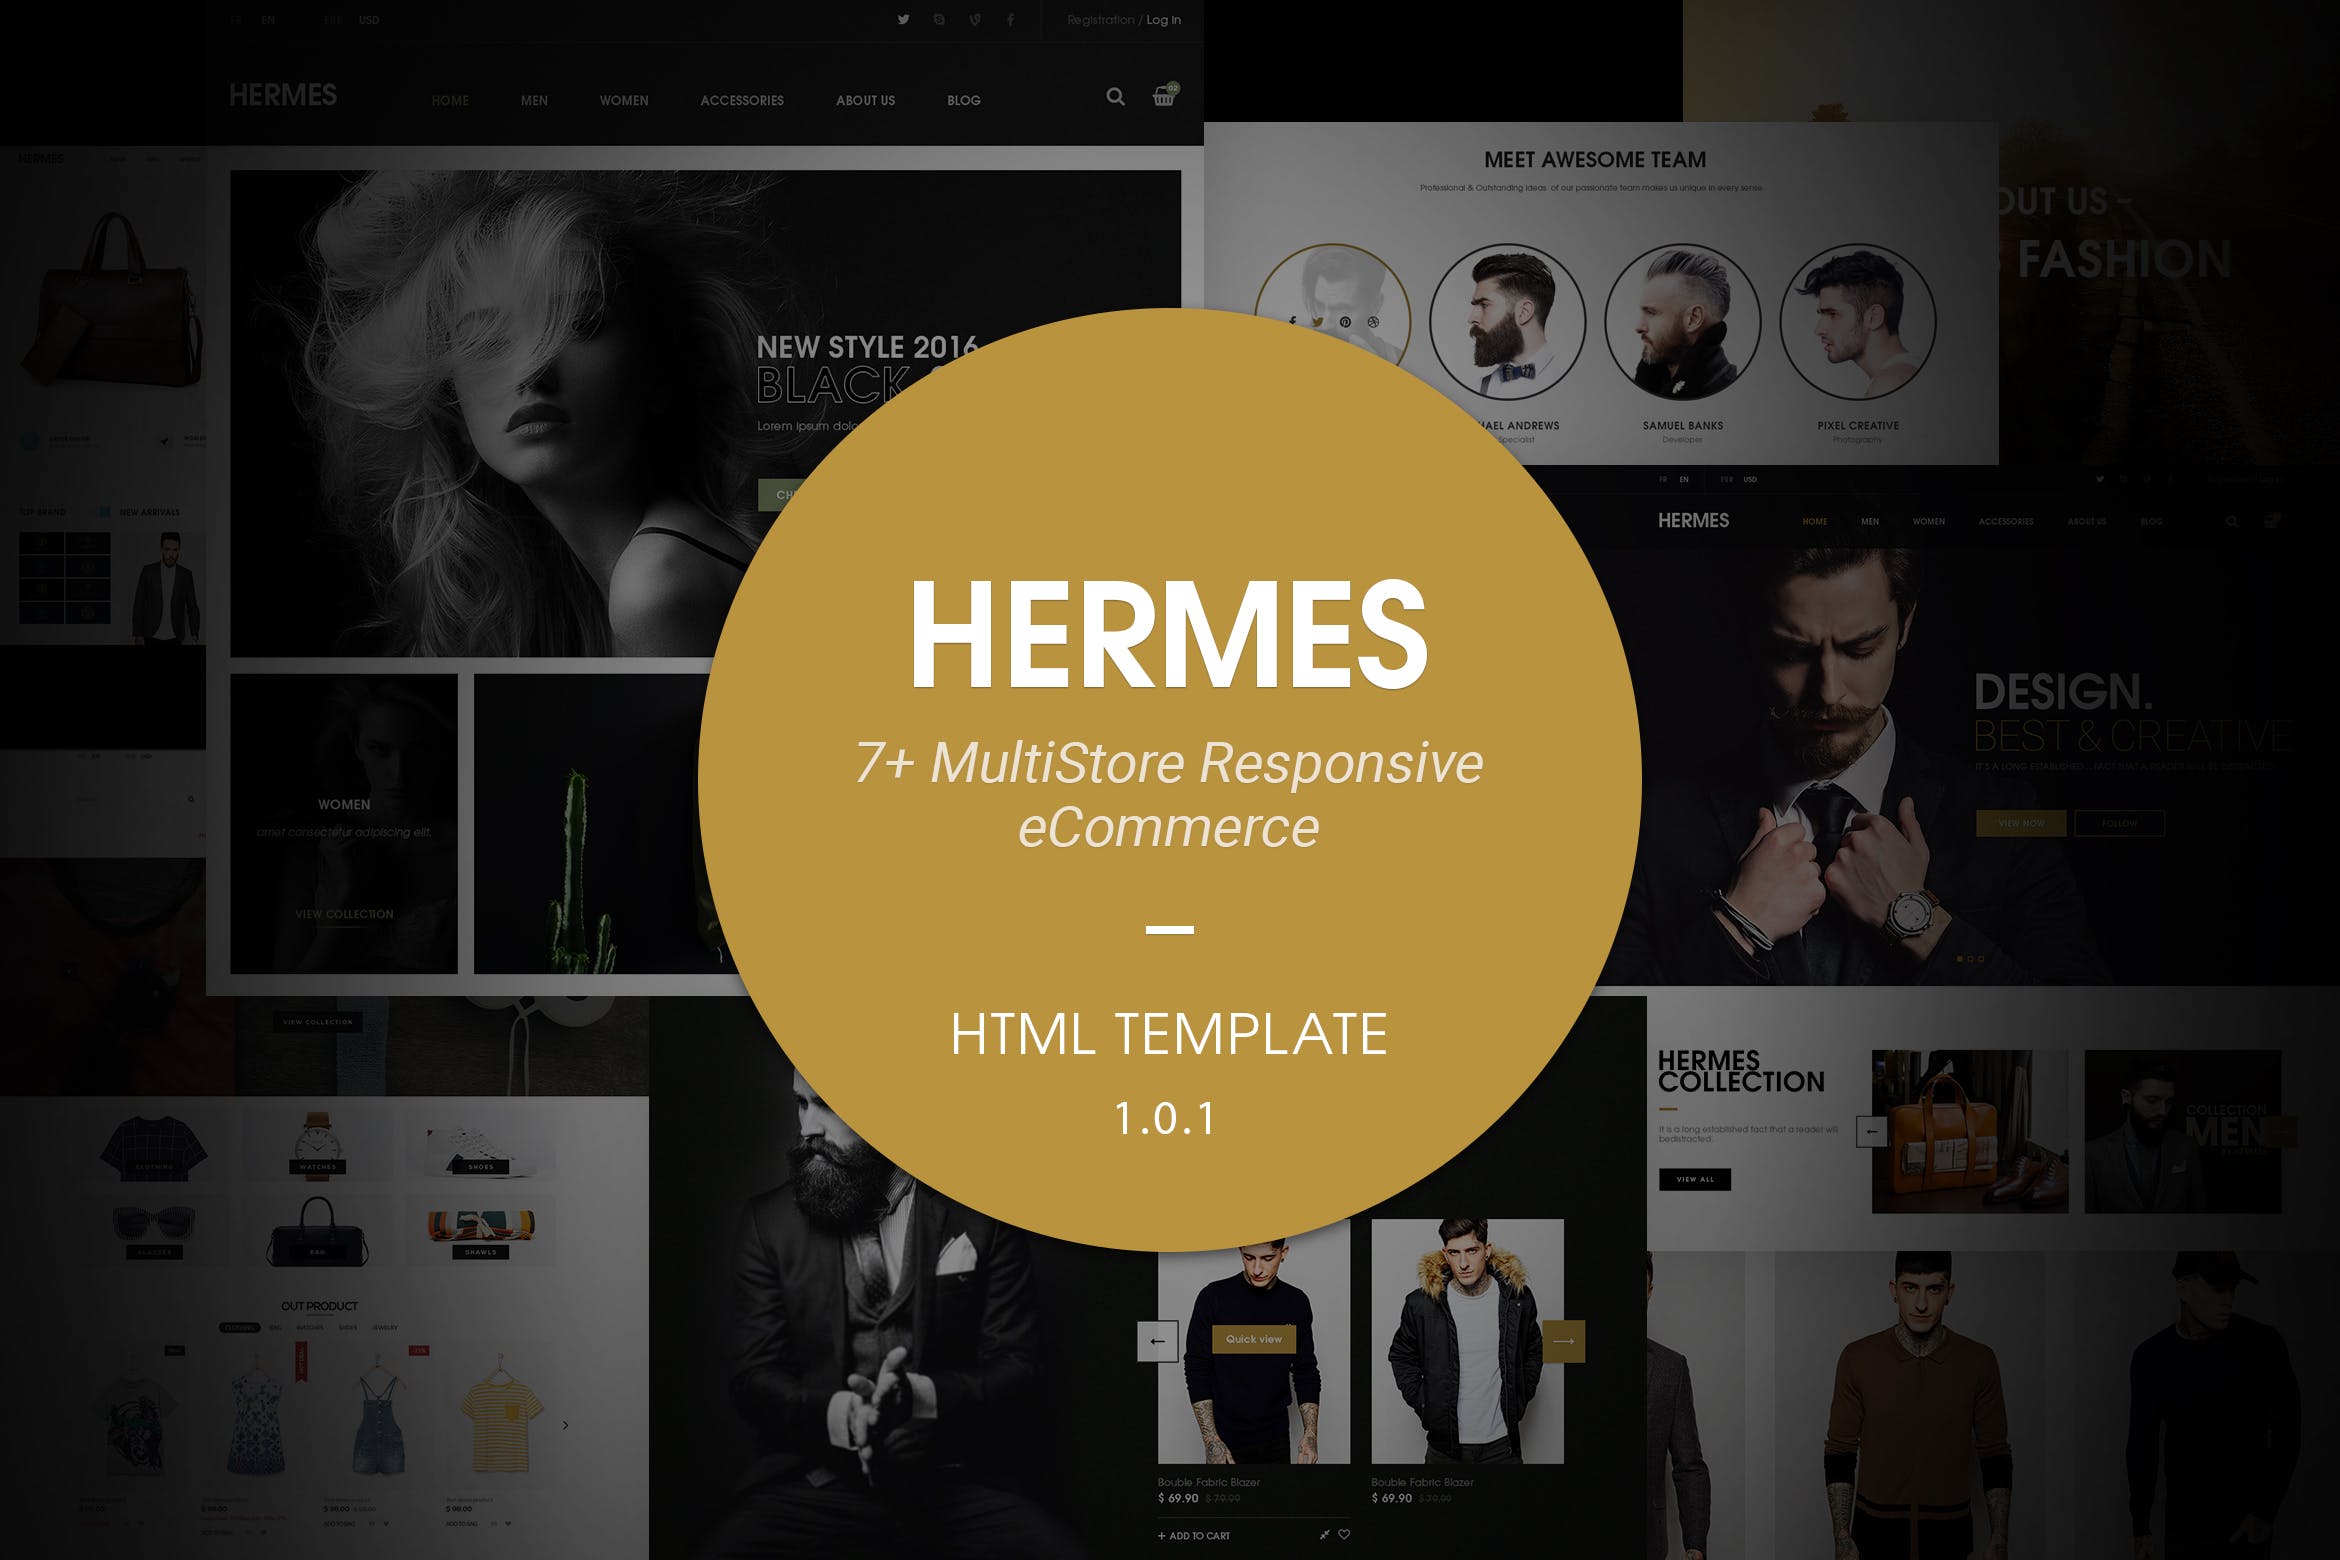 多用途奢侈品响应式网上商城HTML模板非凡图库精选 Hermes | Multi Store Responsive HTML Template插图